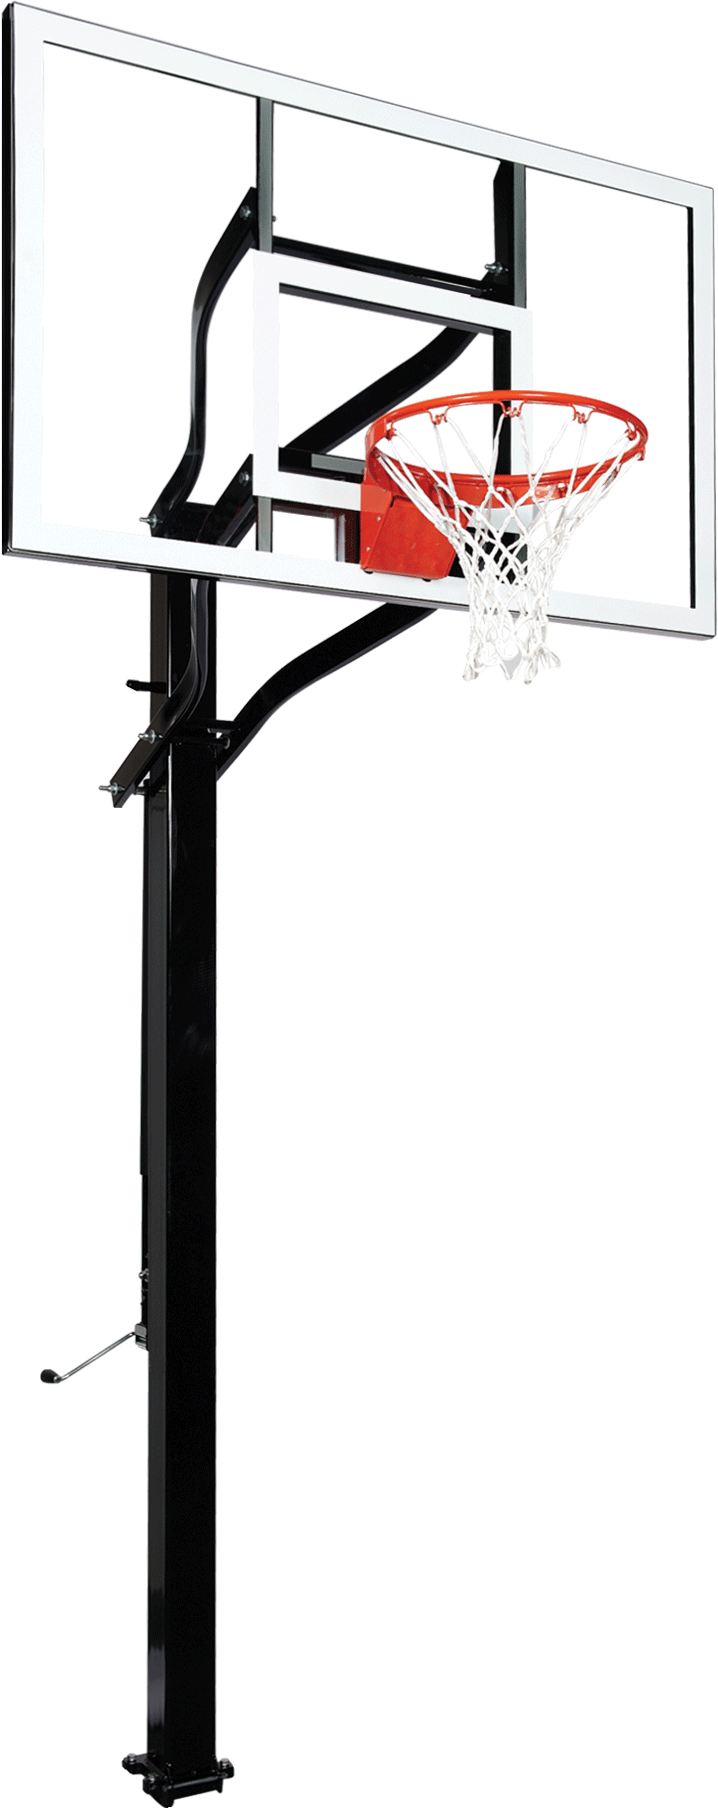 Goalsetter X560 basketball goal - Glass - HD Breakaway Rim_1